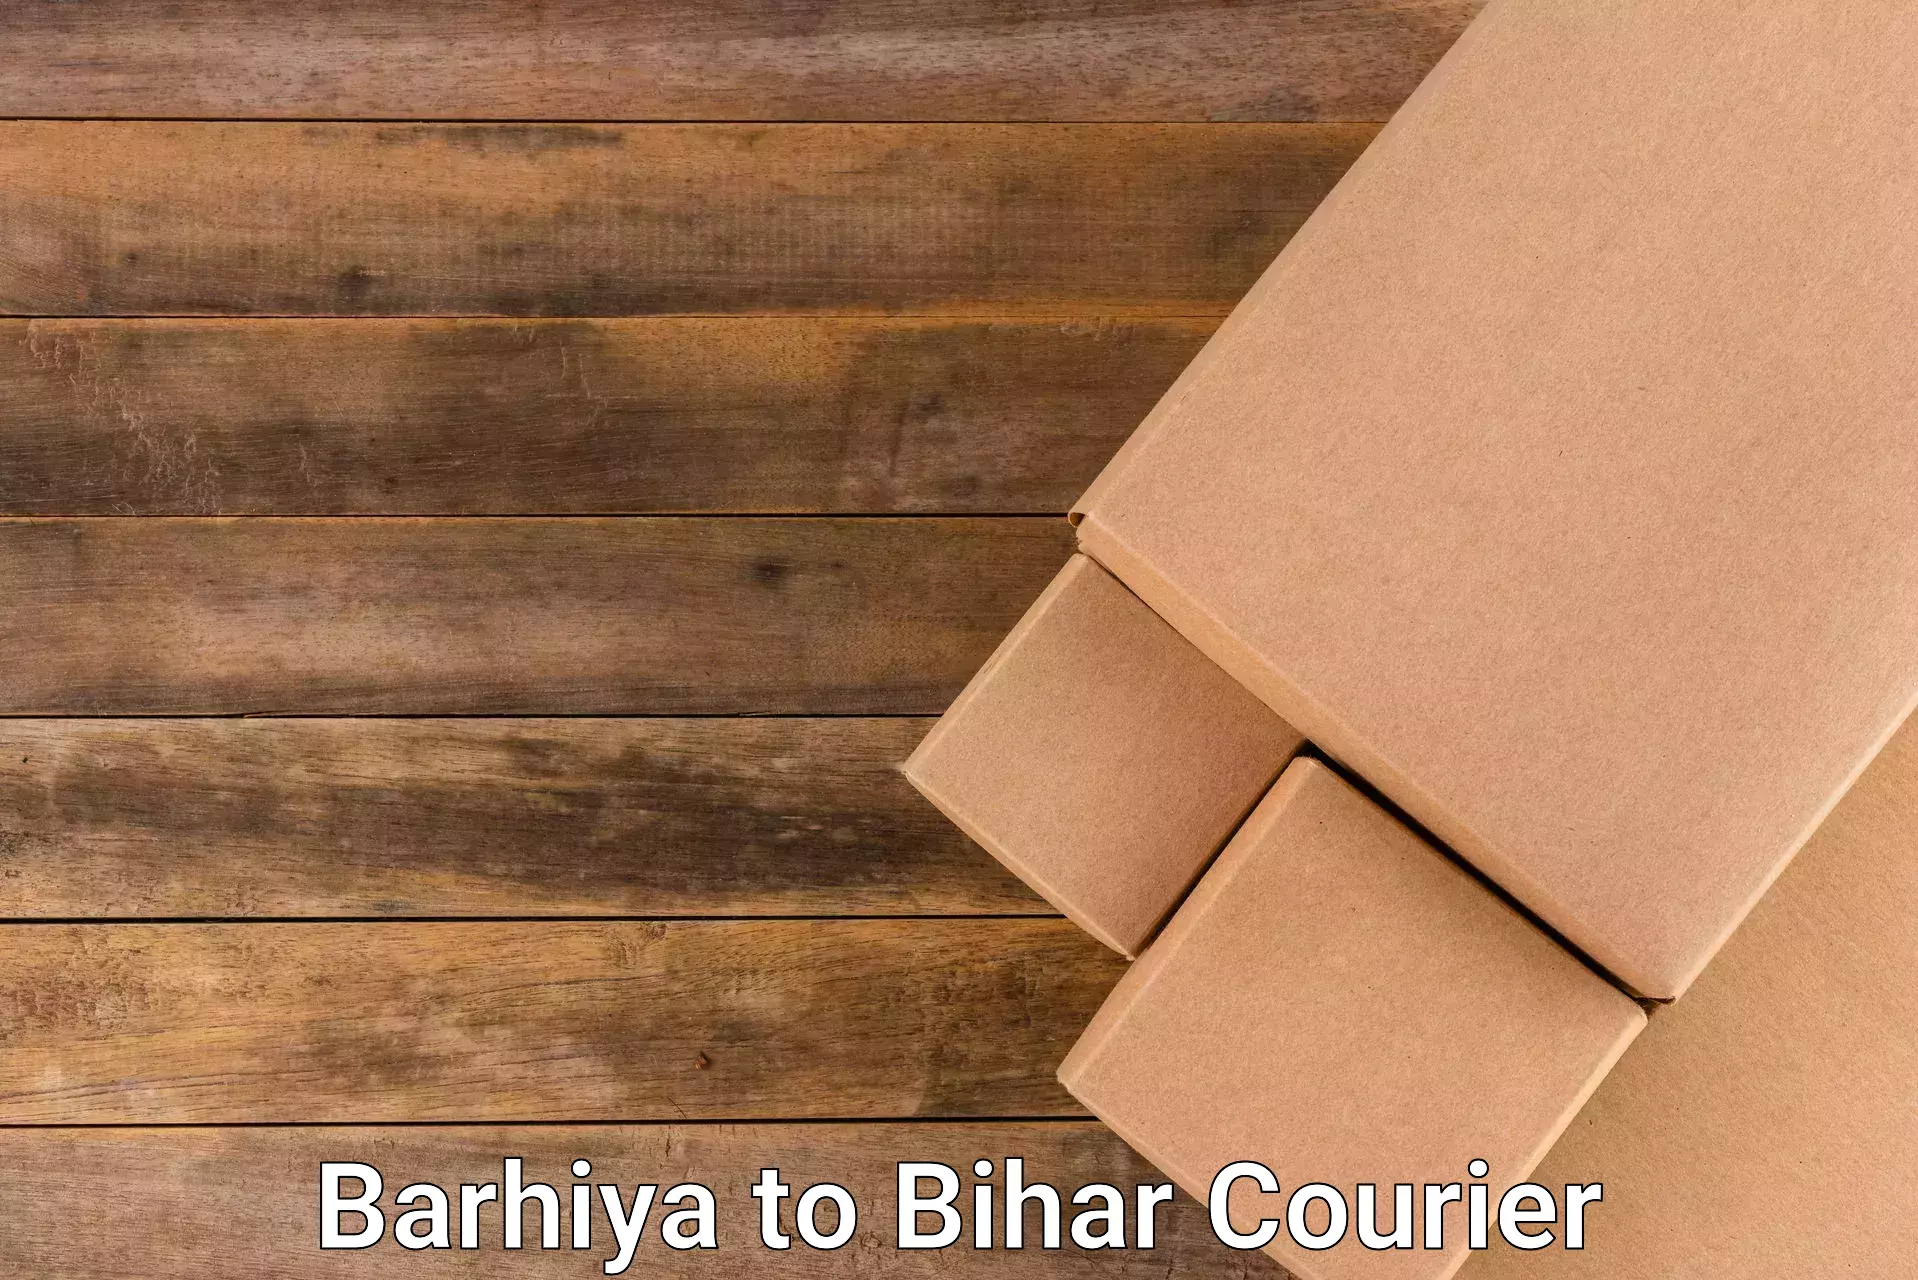 Urgent courier needs Barhiya to Darbhanga